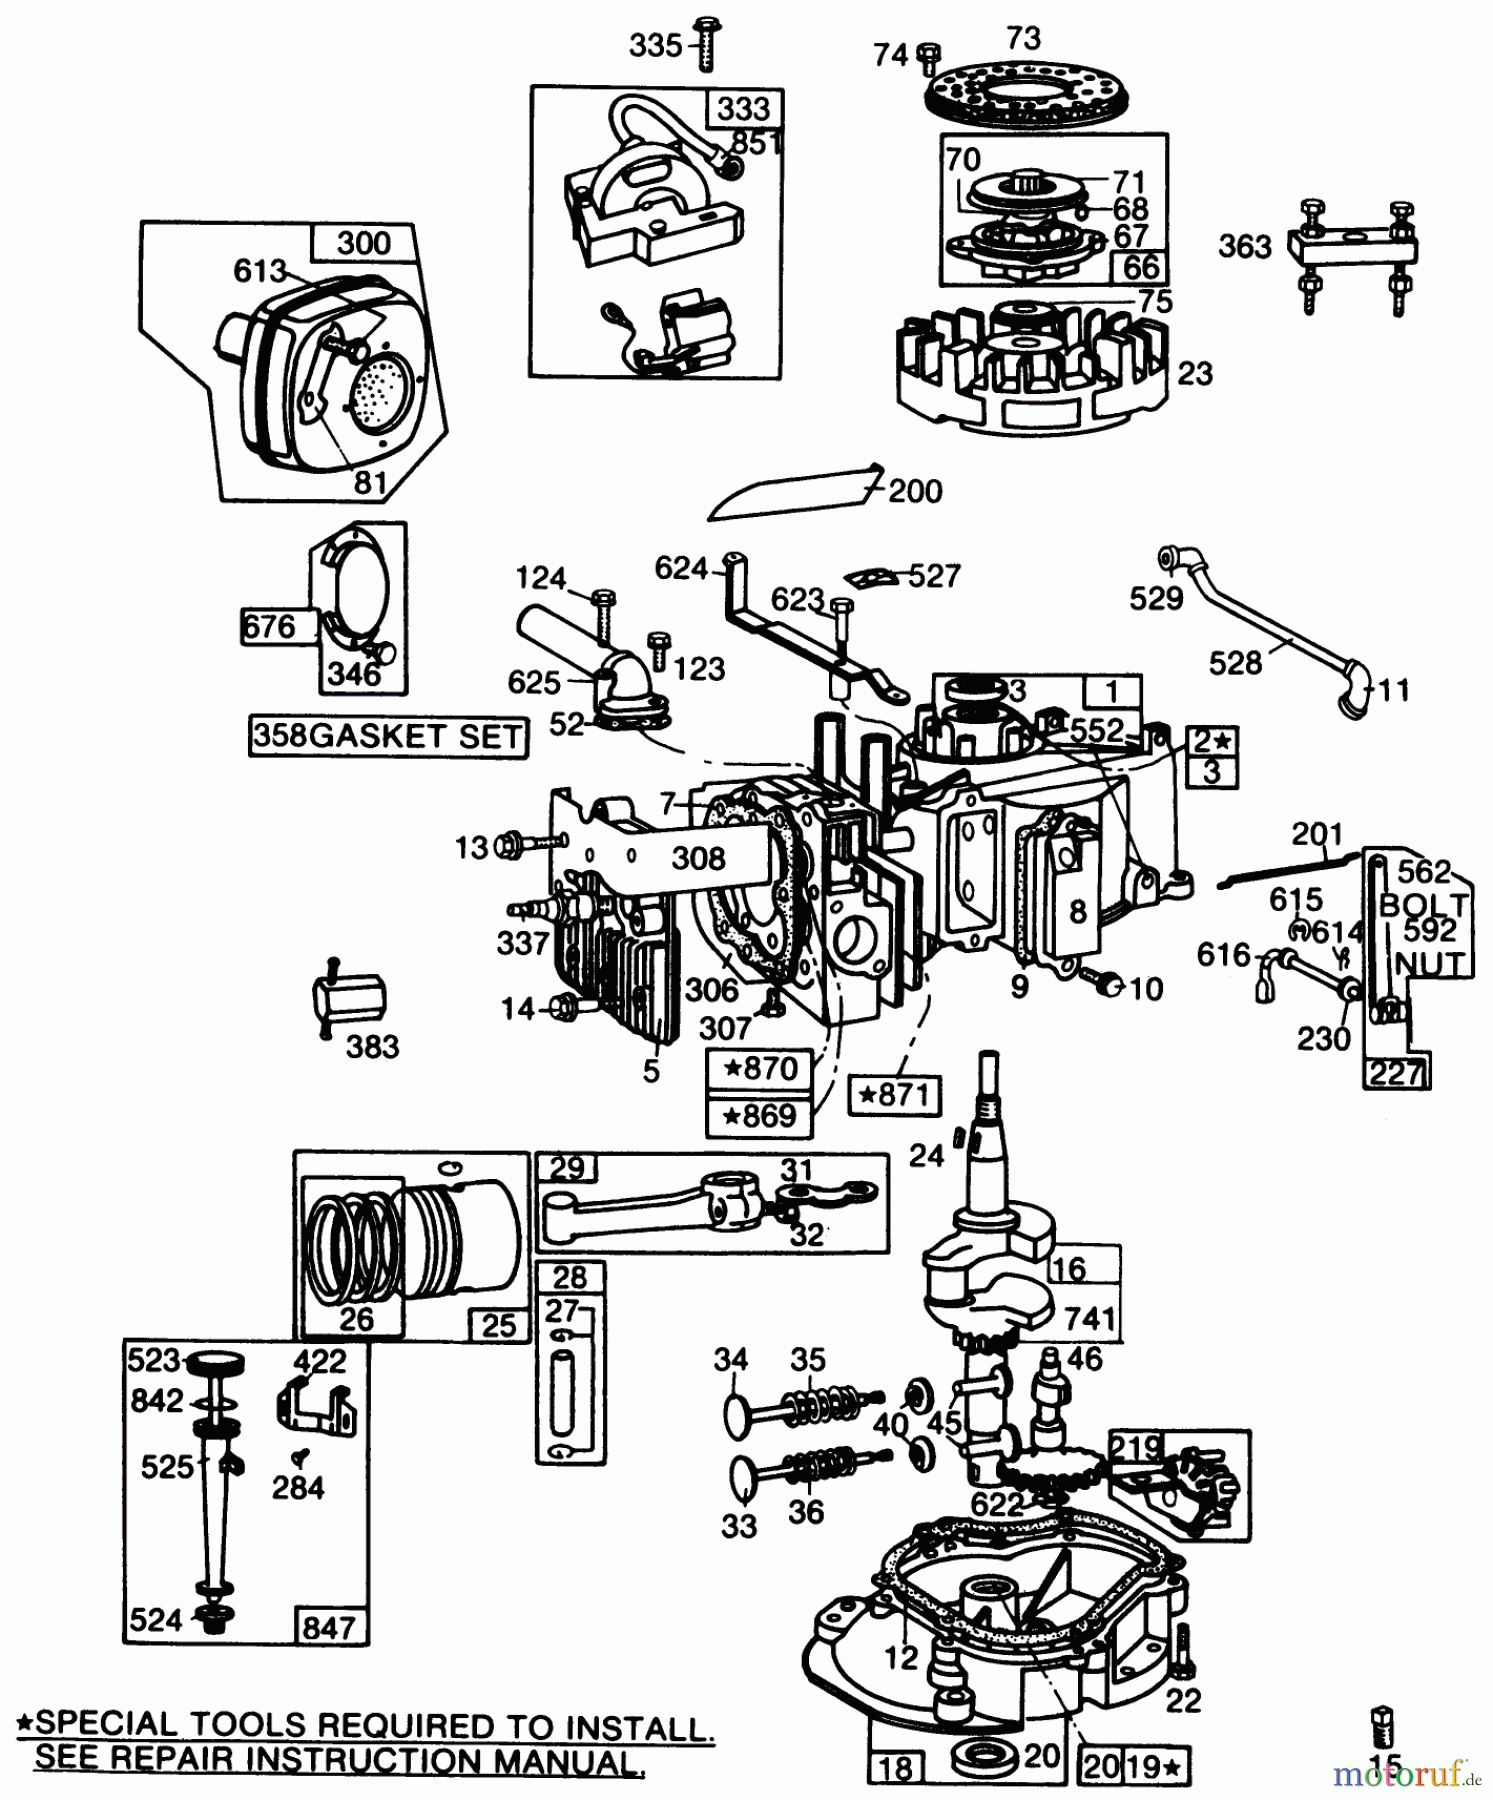  Toro Neu Mowers, Walk-Behind Seite 2 22005 - Toro Lawnmower, 1989 (9000001-9999999) ENGINE BRIGGS & STRATTON MODEL NO. 130902 TYPE 1200-01 #1